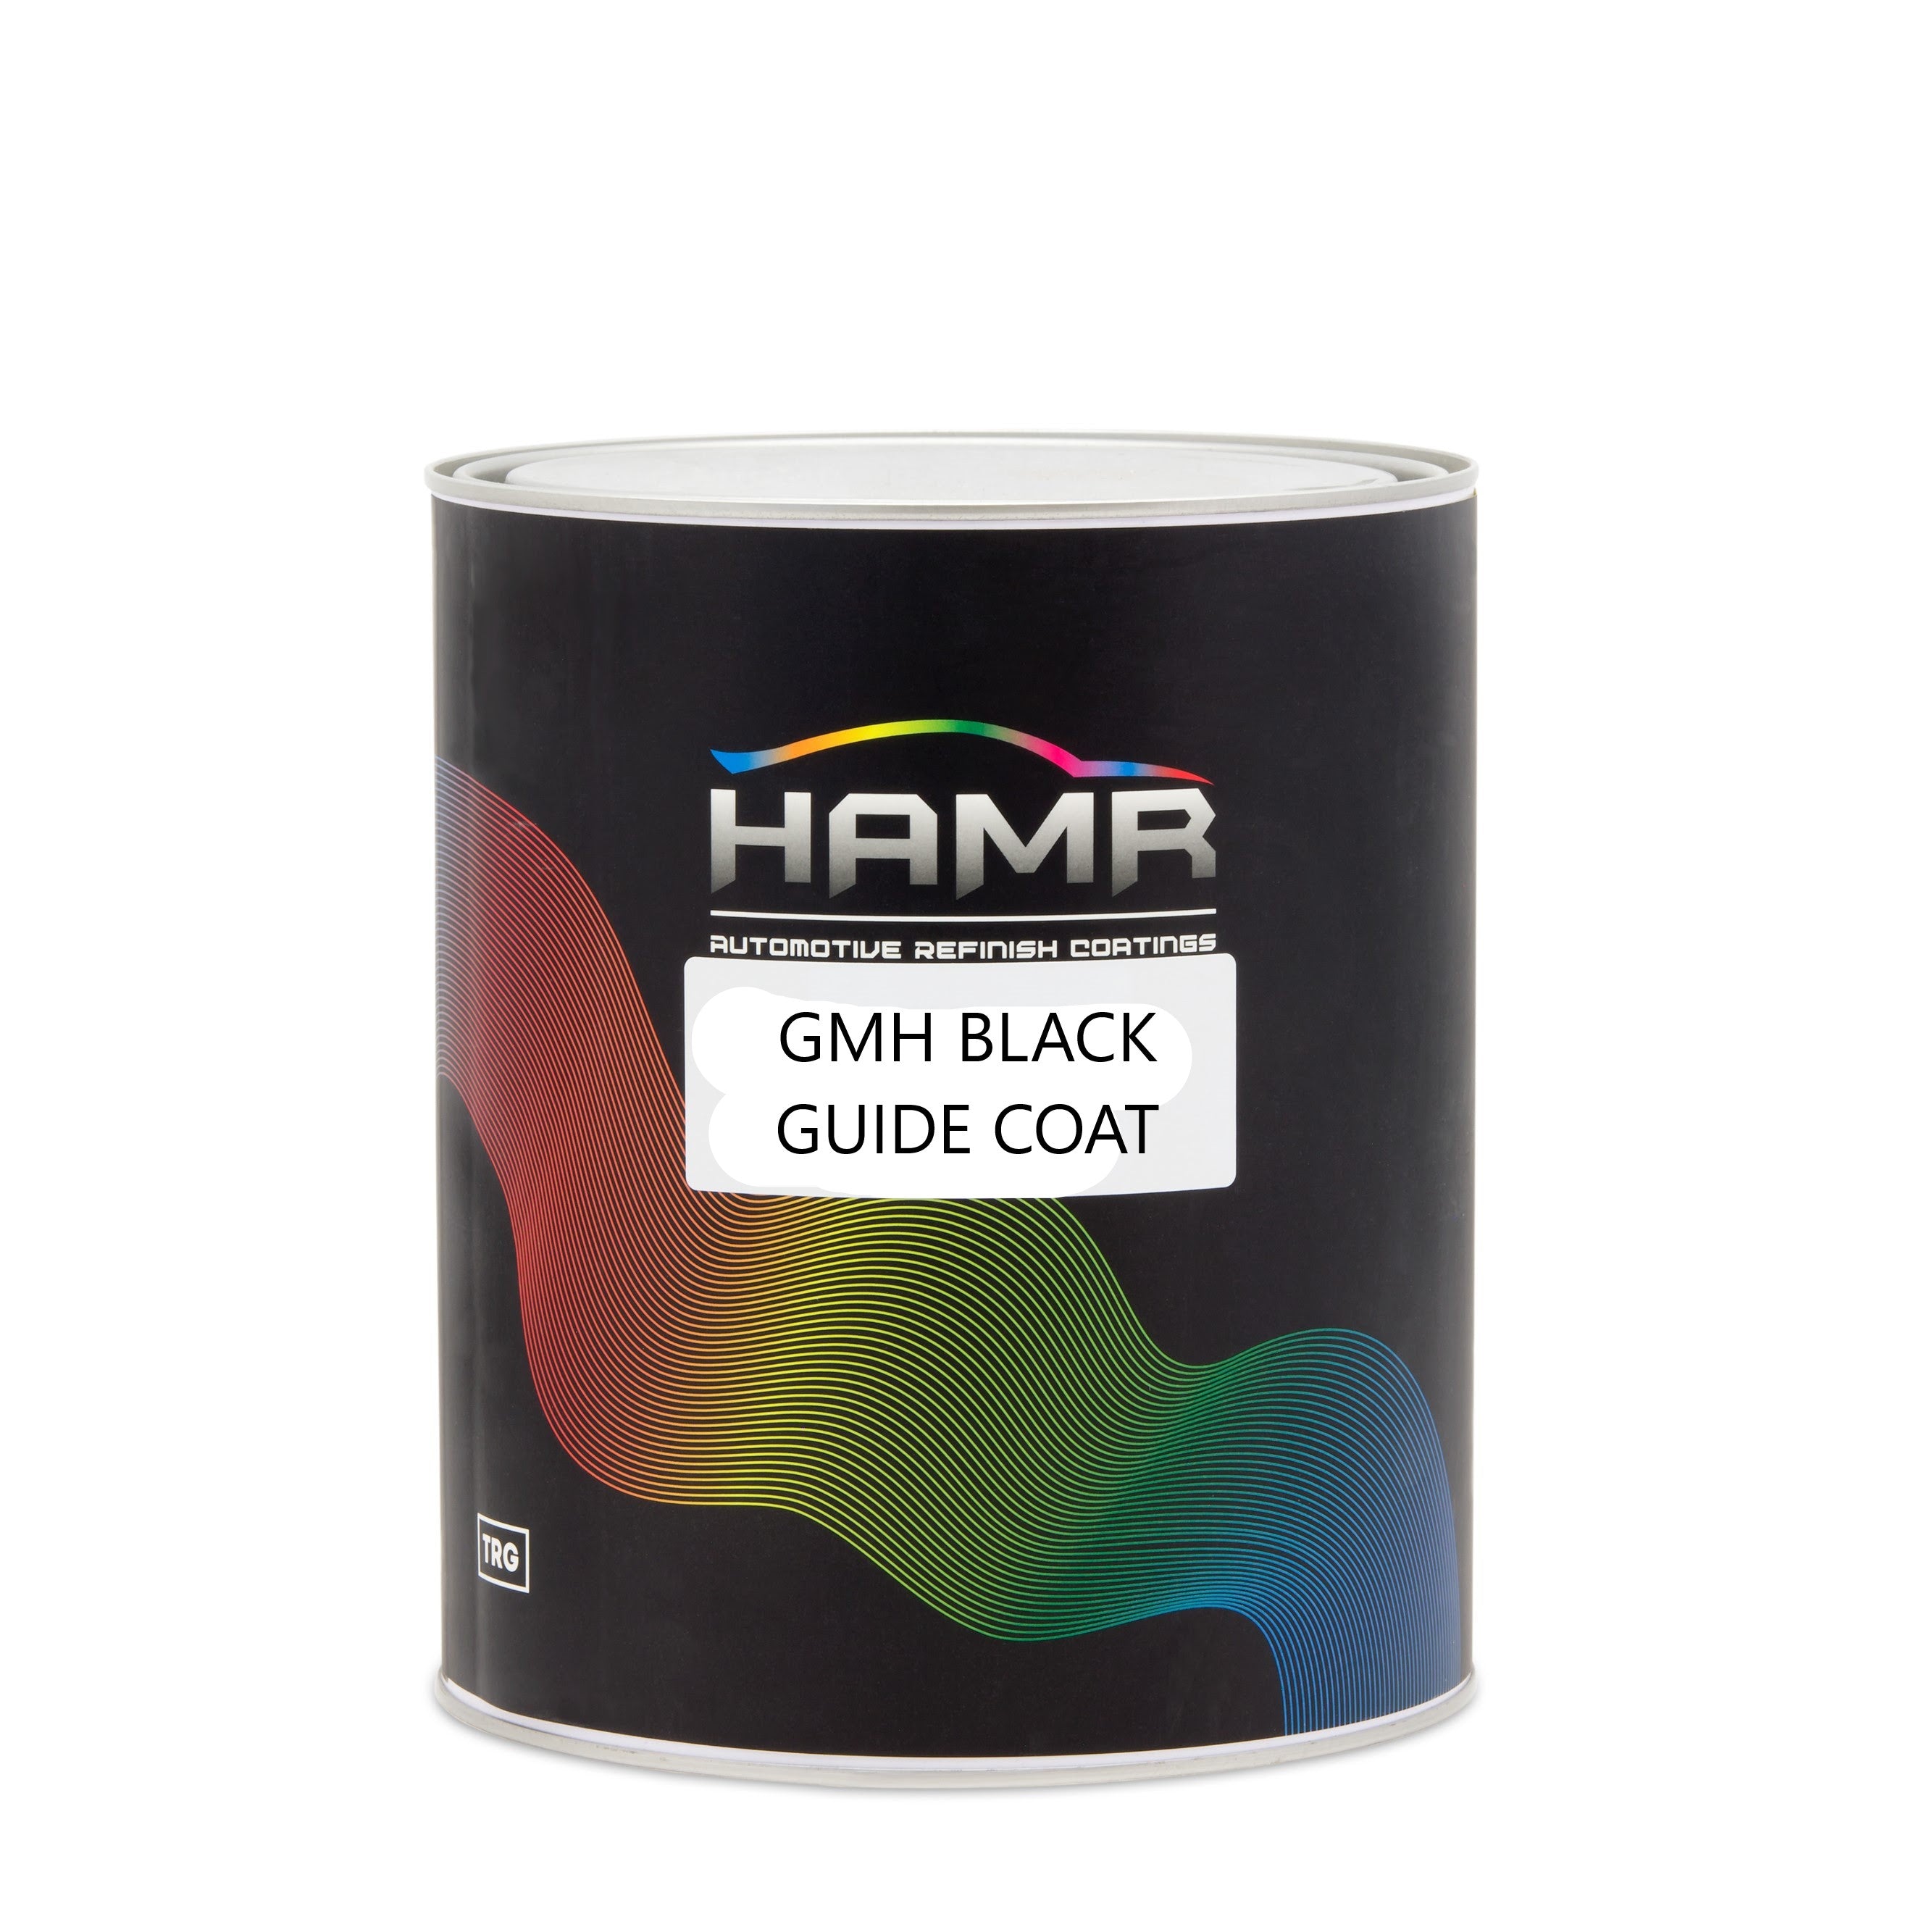 GMH BLACK GUIDE COAT